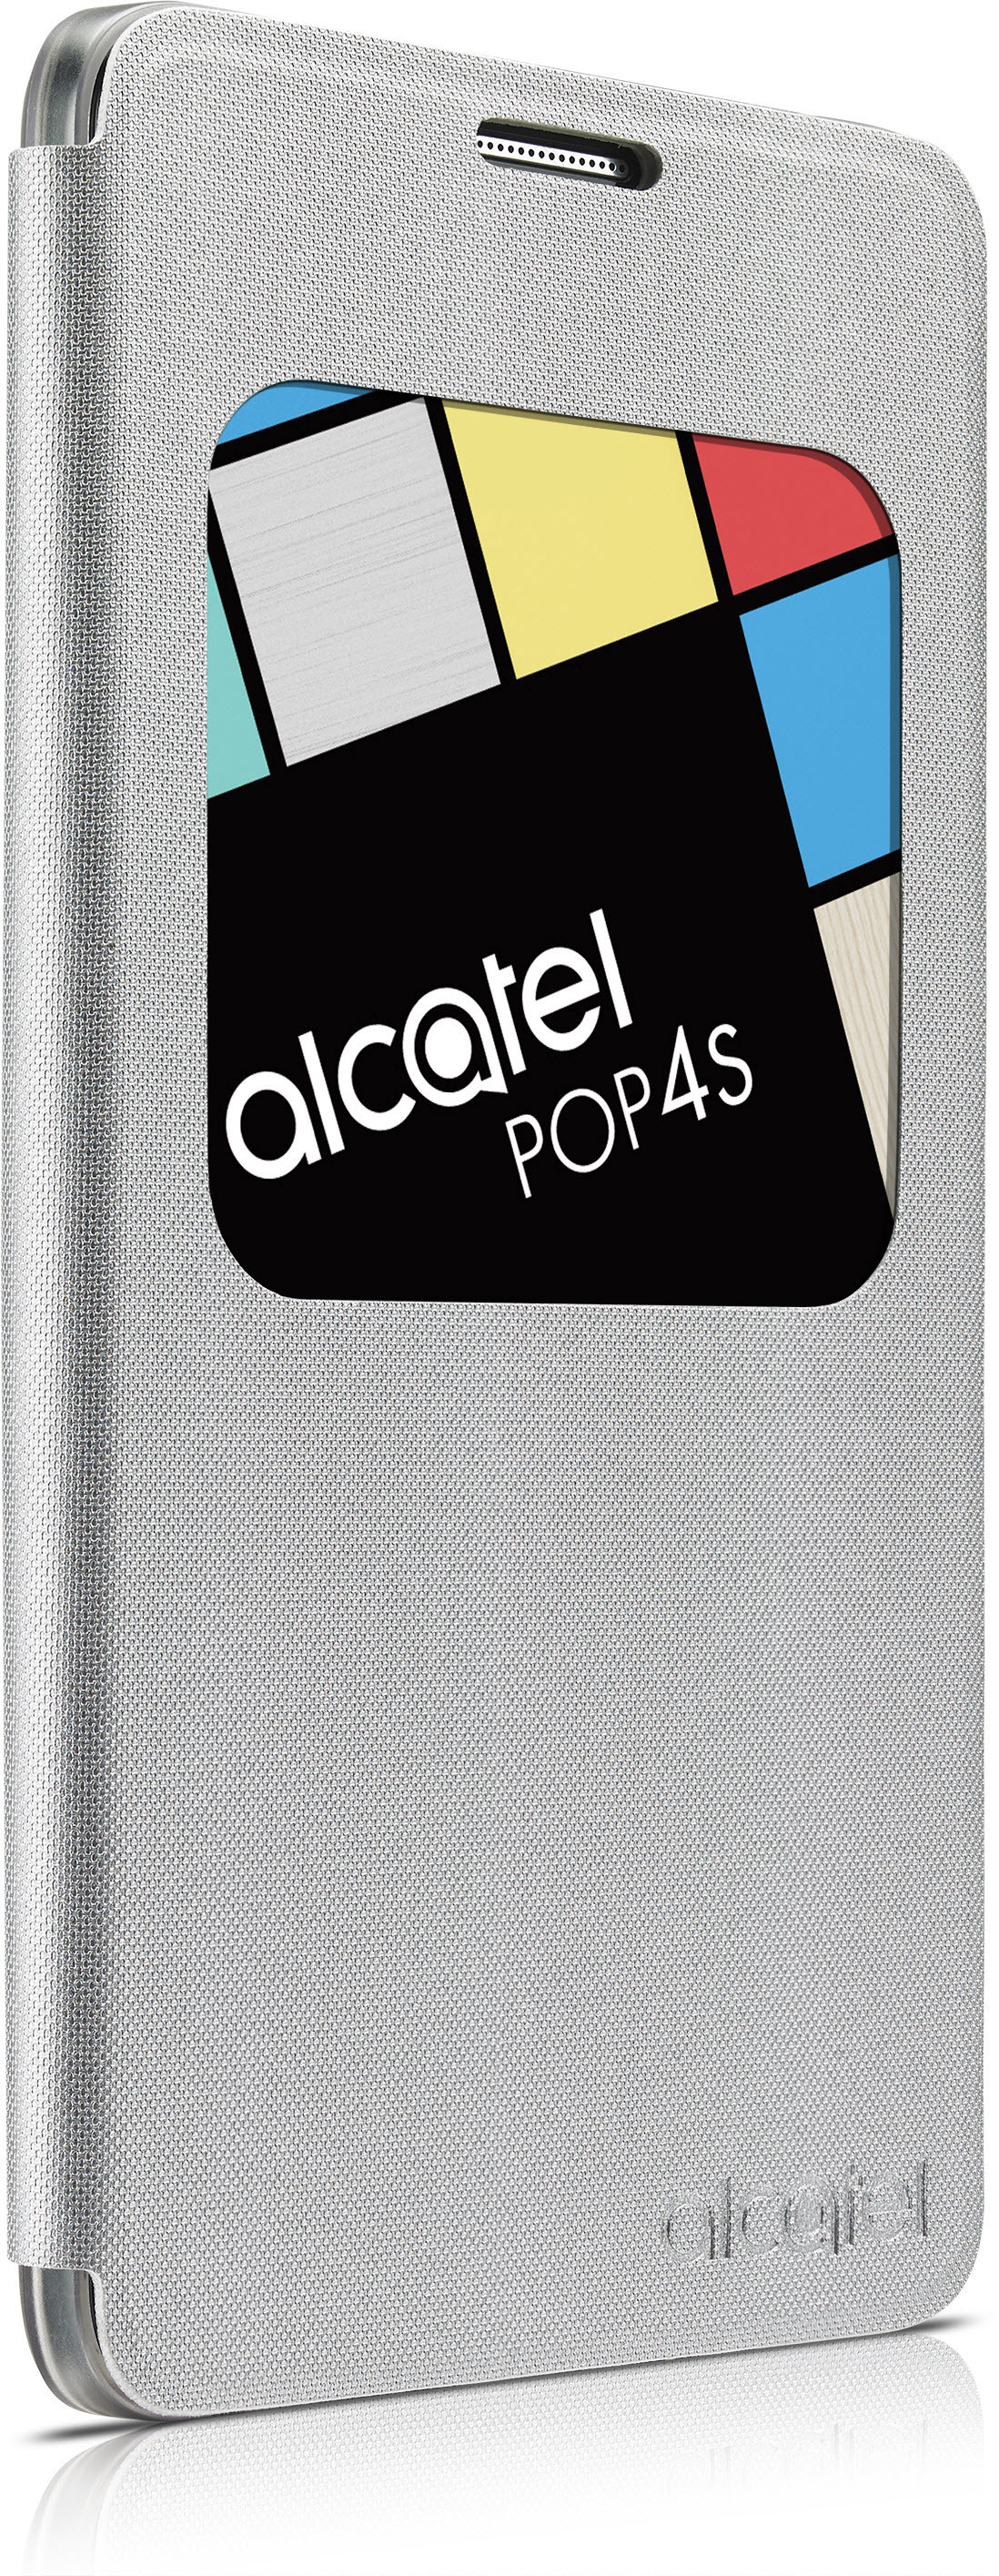 ALCATEL AF5095, Bookcover, Alcatel, 4S, Silber POP